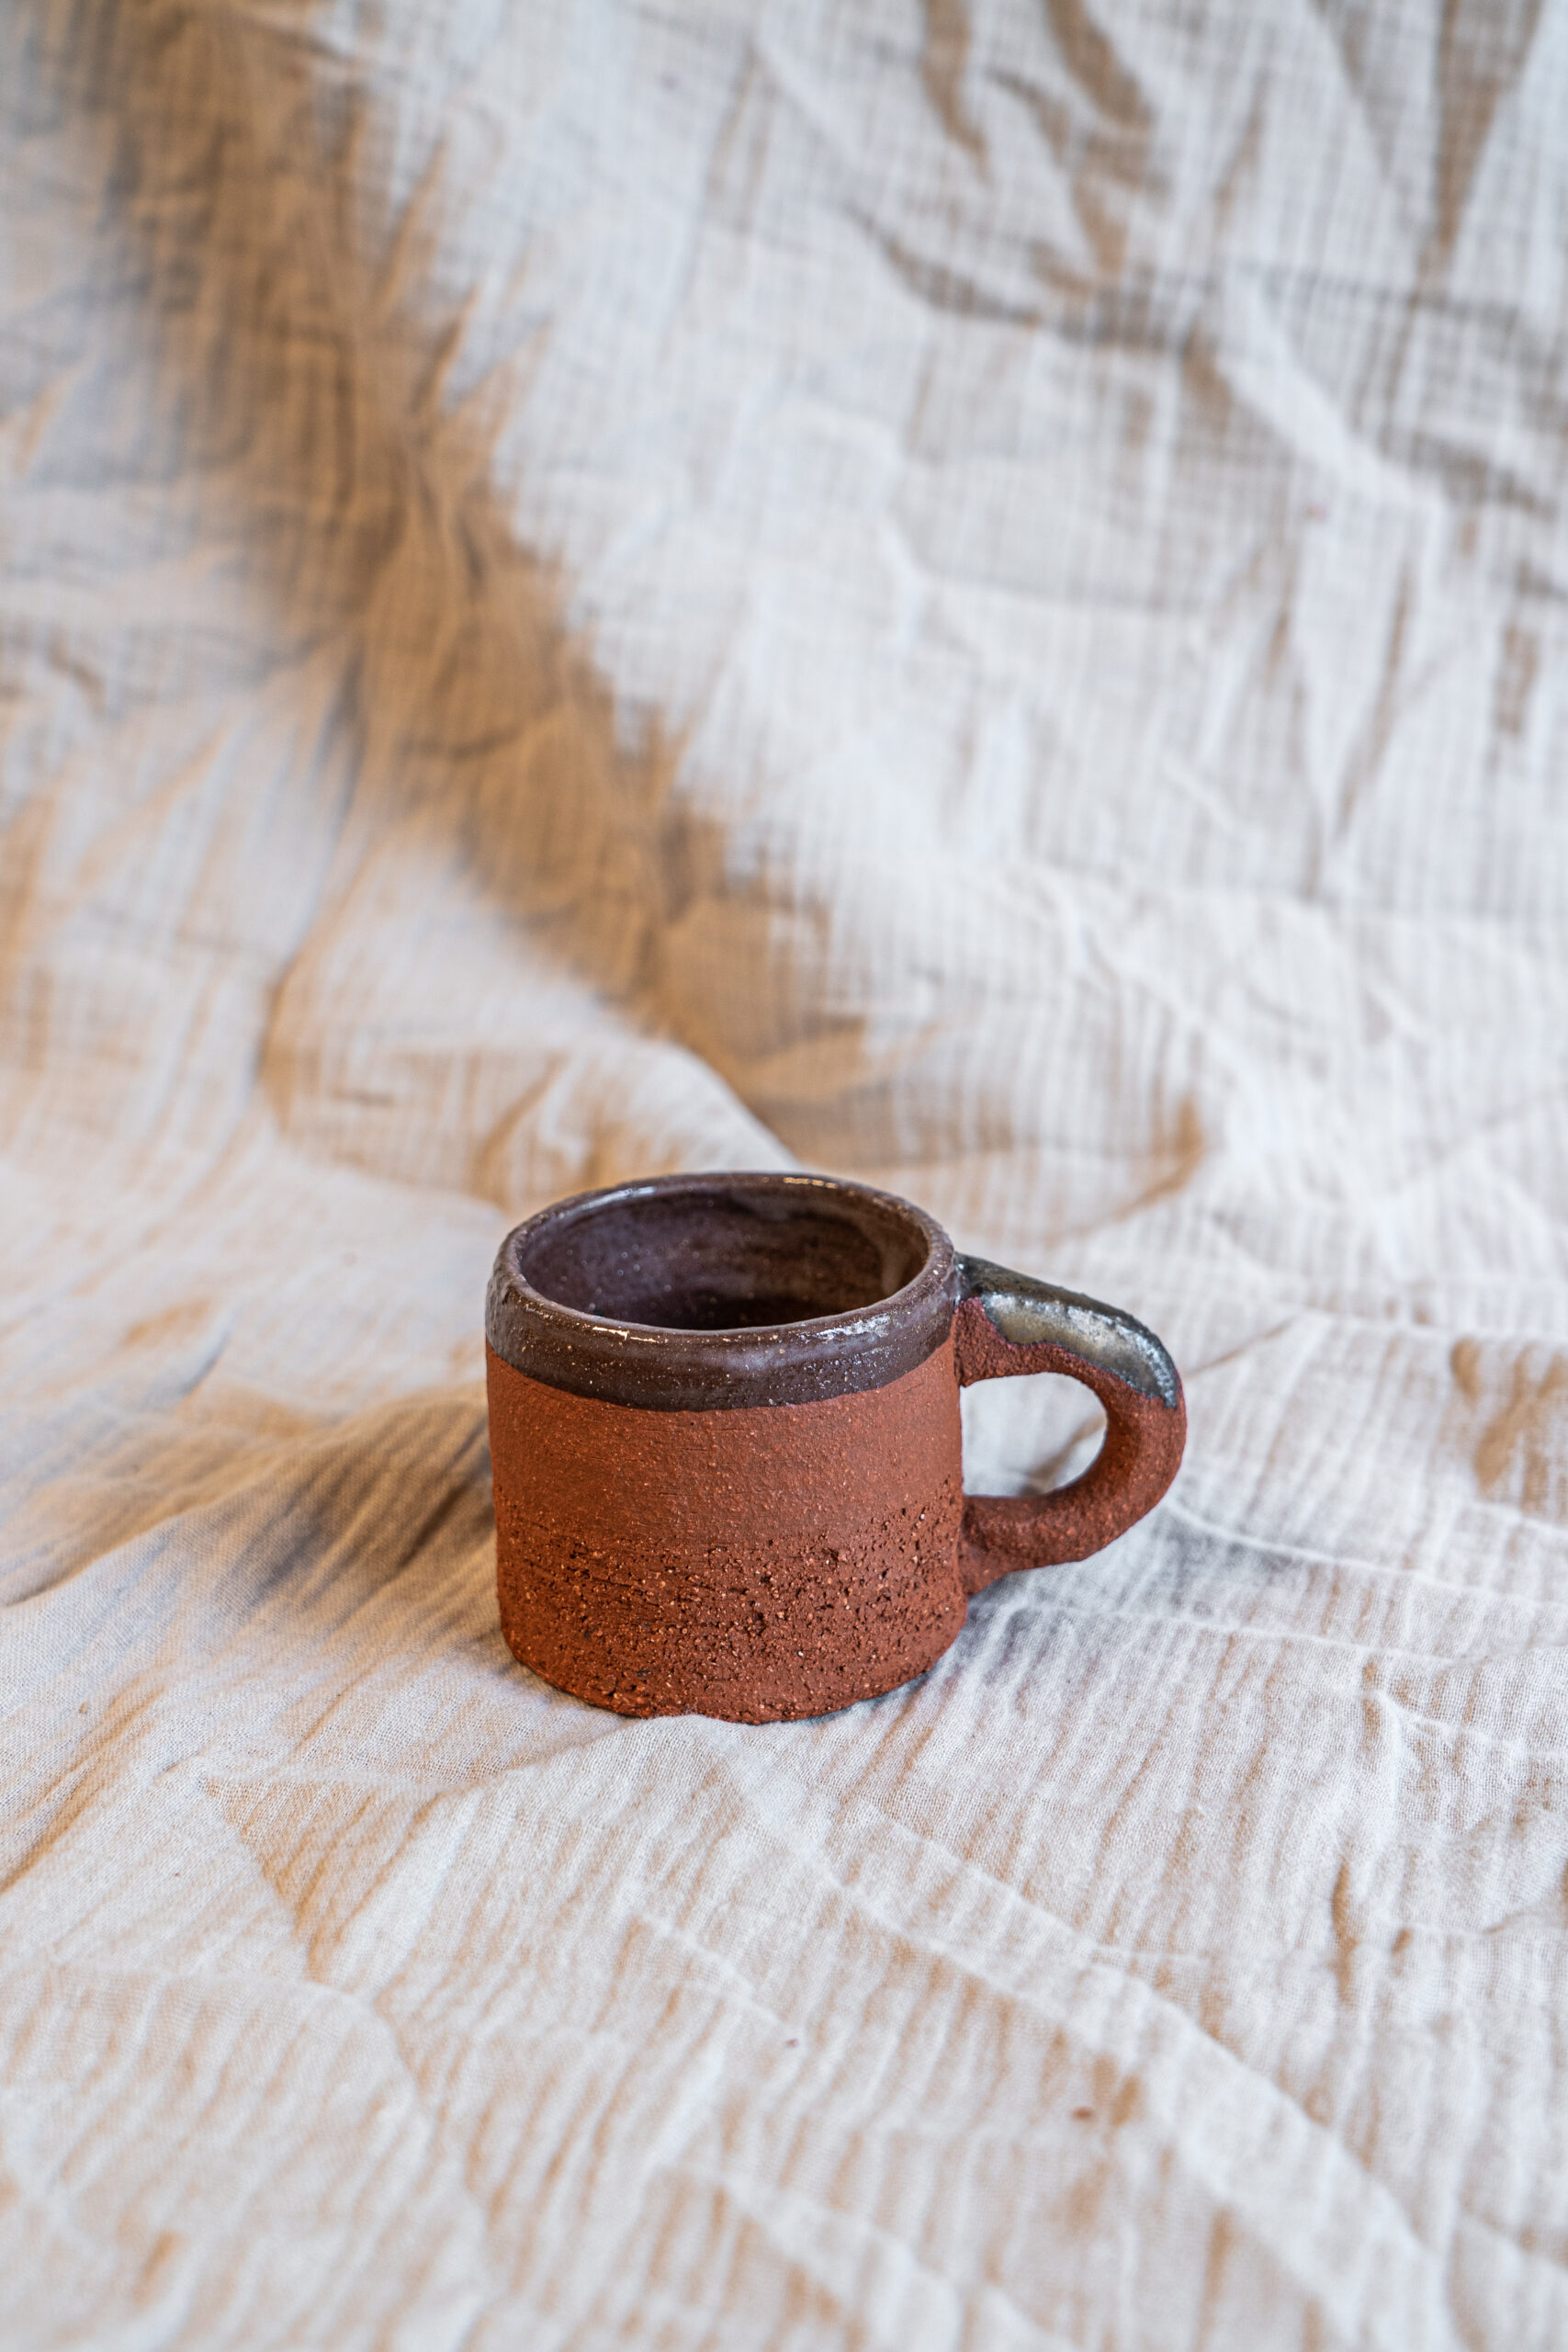 Handgemaakte beker keramiek terracotta goud messing brons handgedraaid kopje koffie STUDIO kapstok Iris Floor